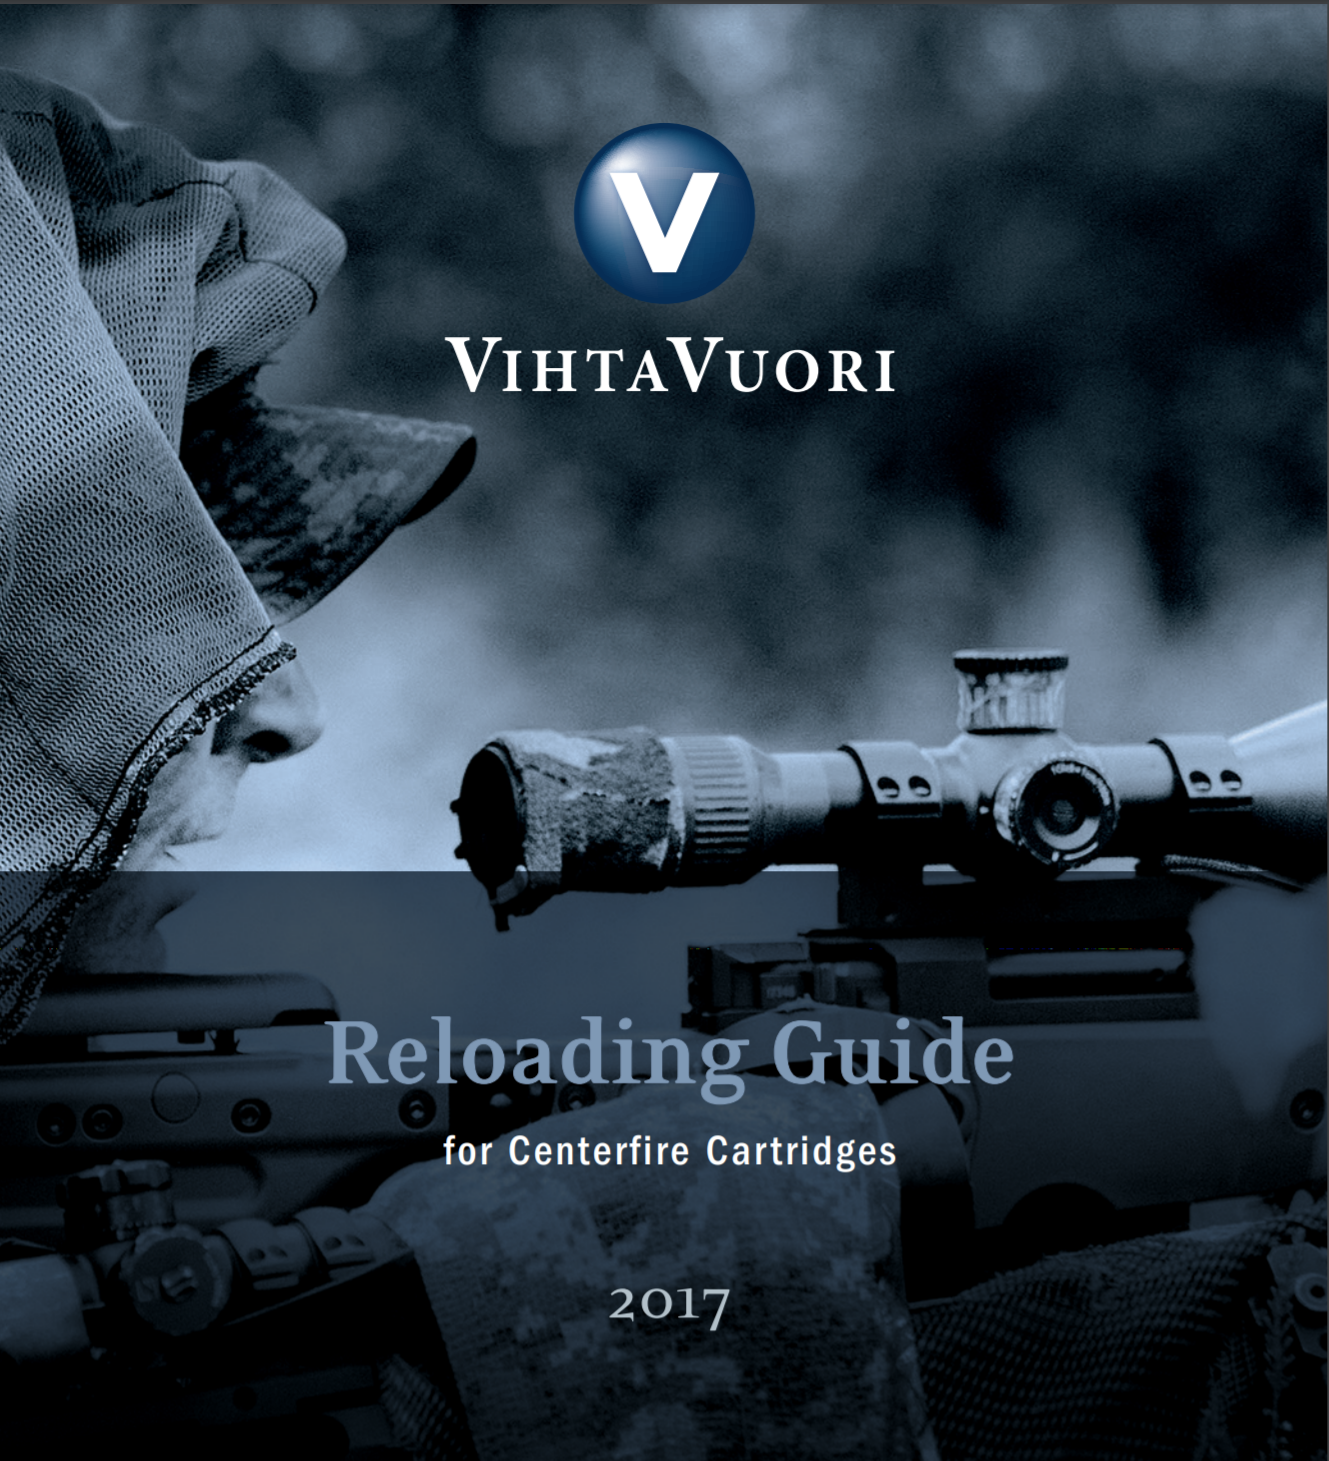 Vithavouri Reloading Guide 2017